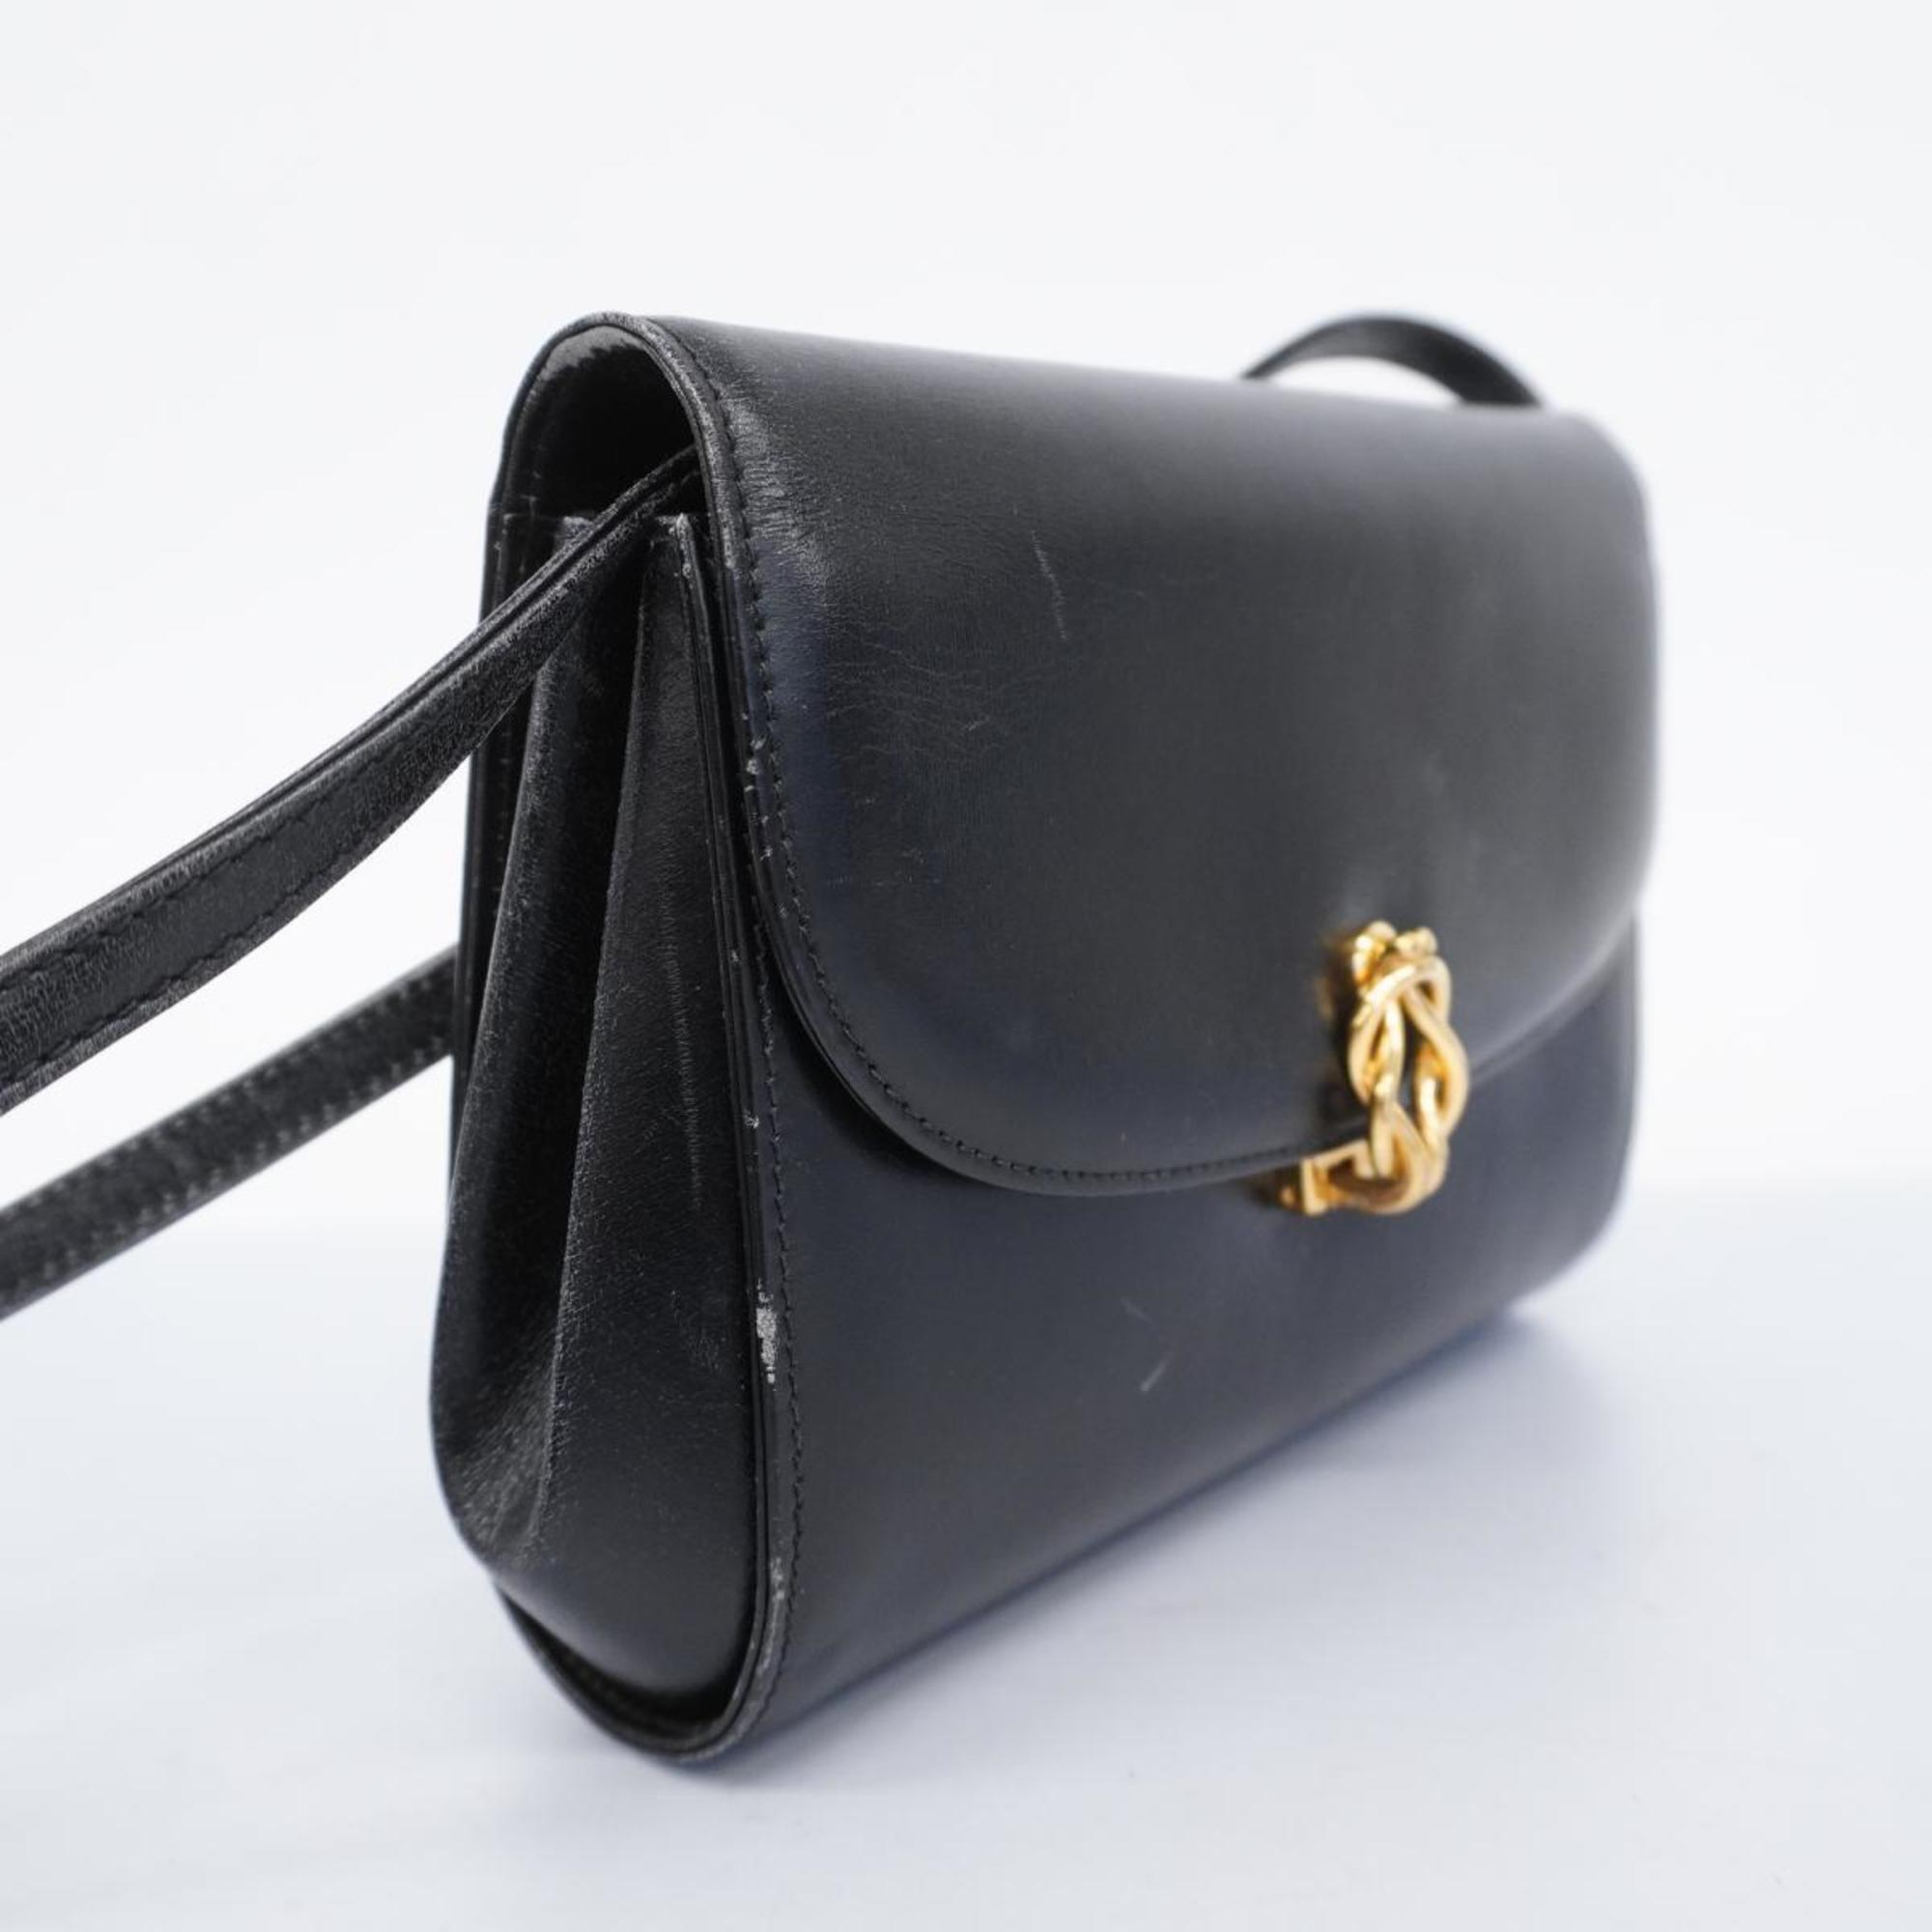 Gucci Shoulder Bag 004 056 0219 Leather Black Women's